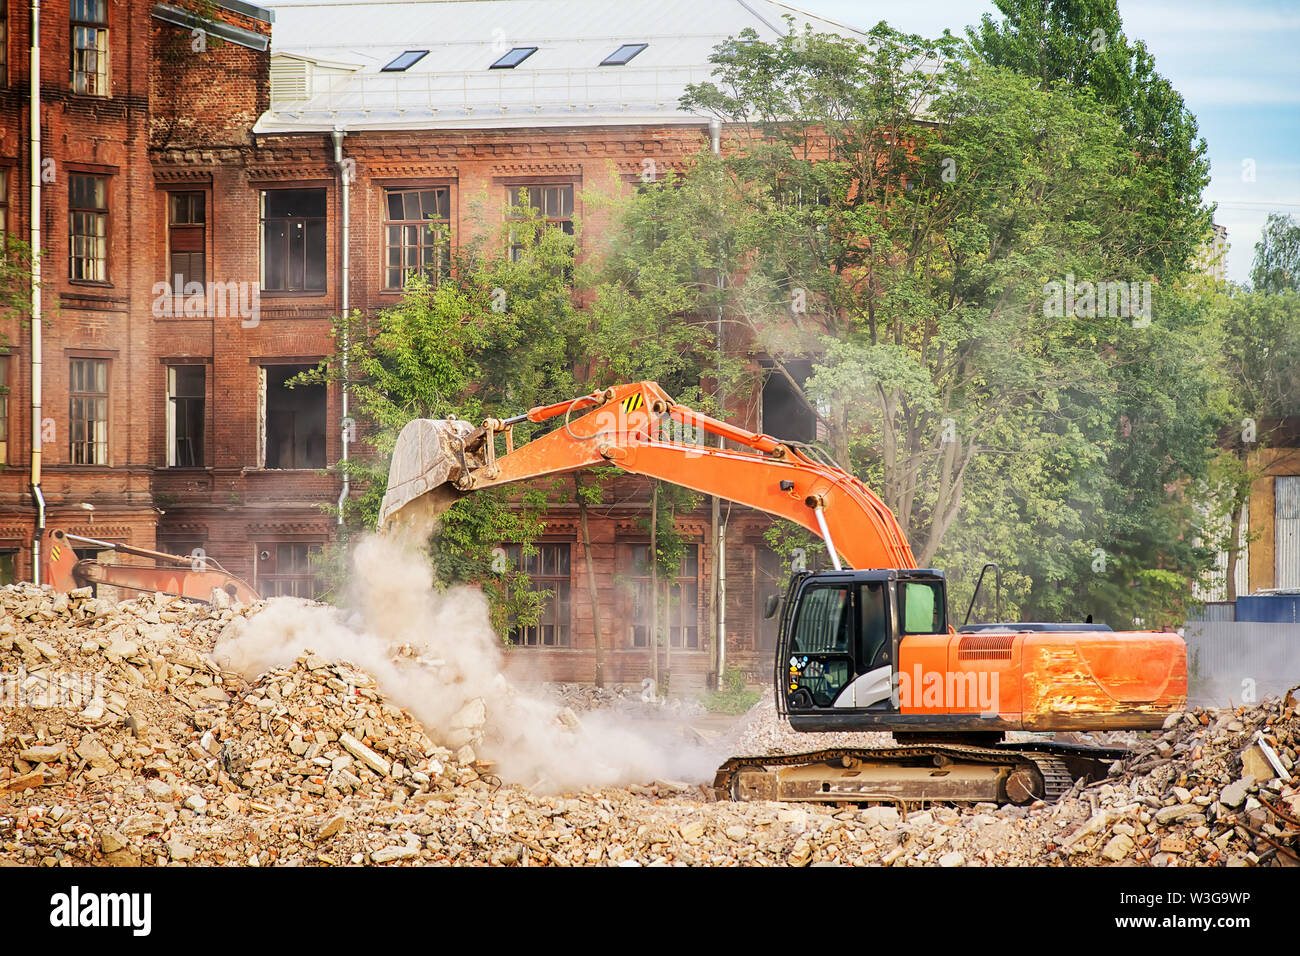 Pelle Orange travaille sur les ruines d'un bâtiment démoli. Nettoyer les gravats, démolition et de compensation site thème libre Banque D'Images